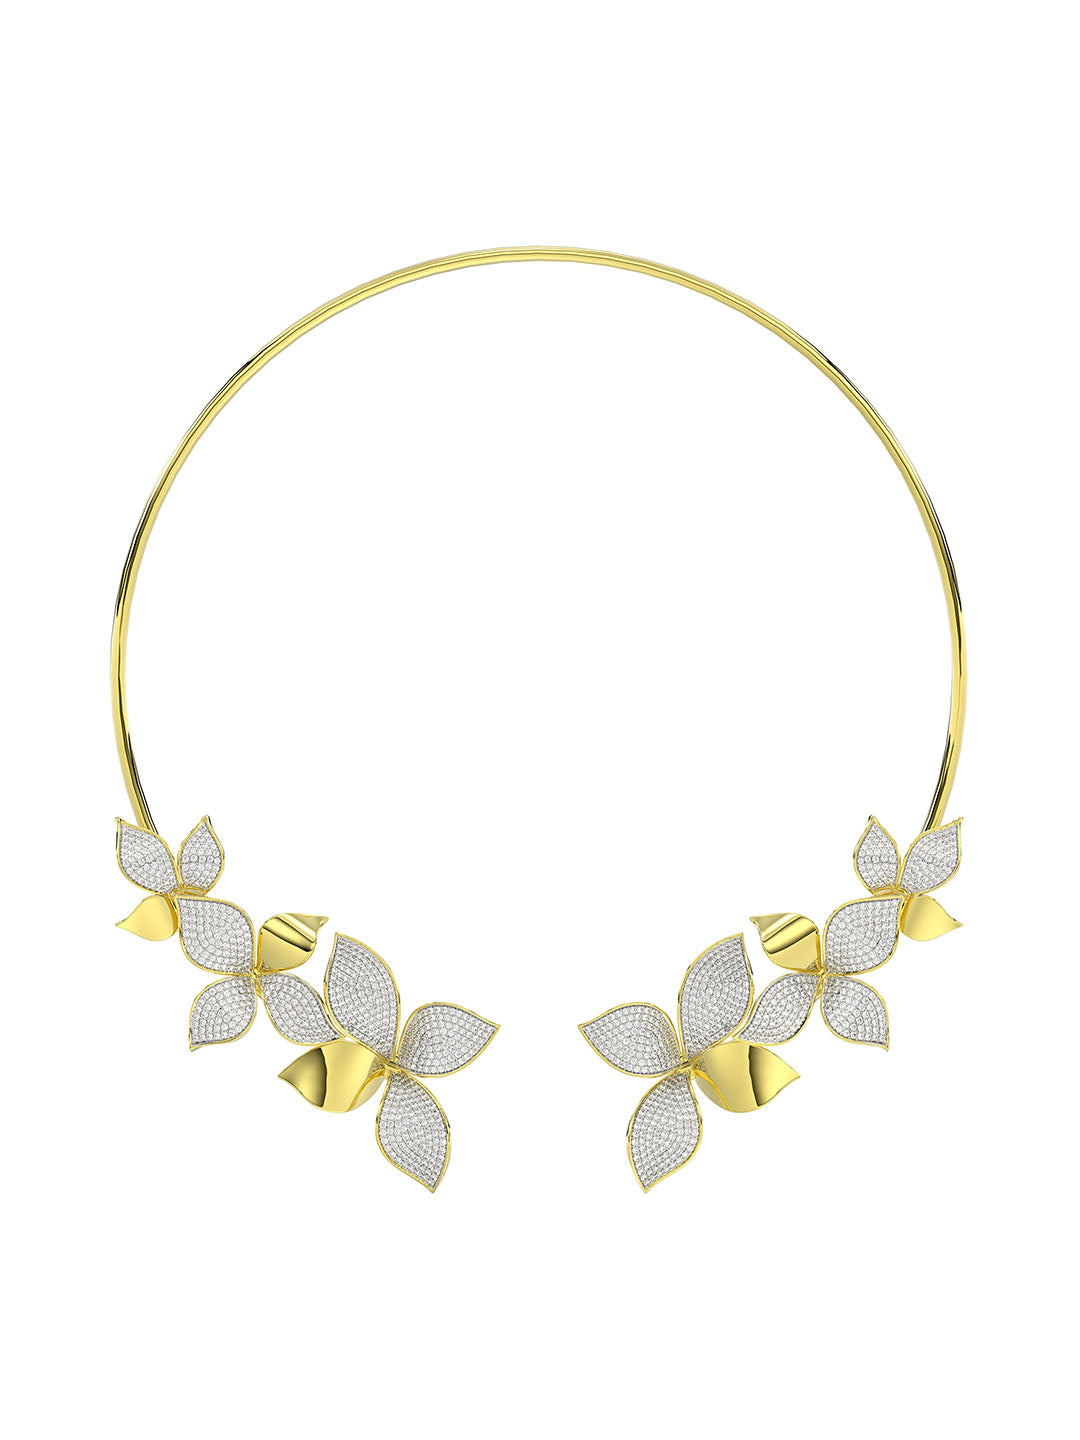 Wild Flower Yellow Gold Necklace | Marchesa